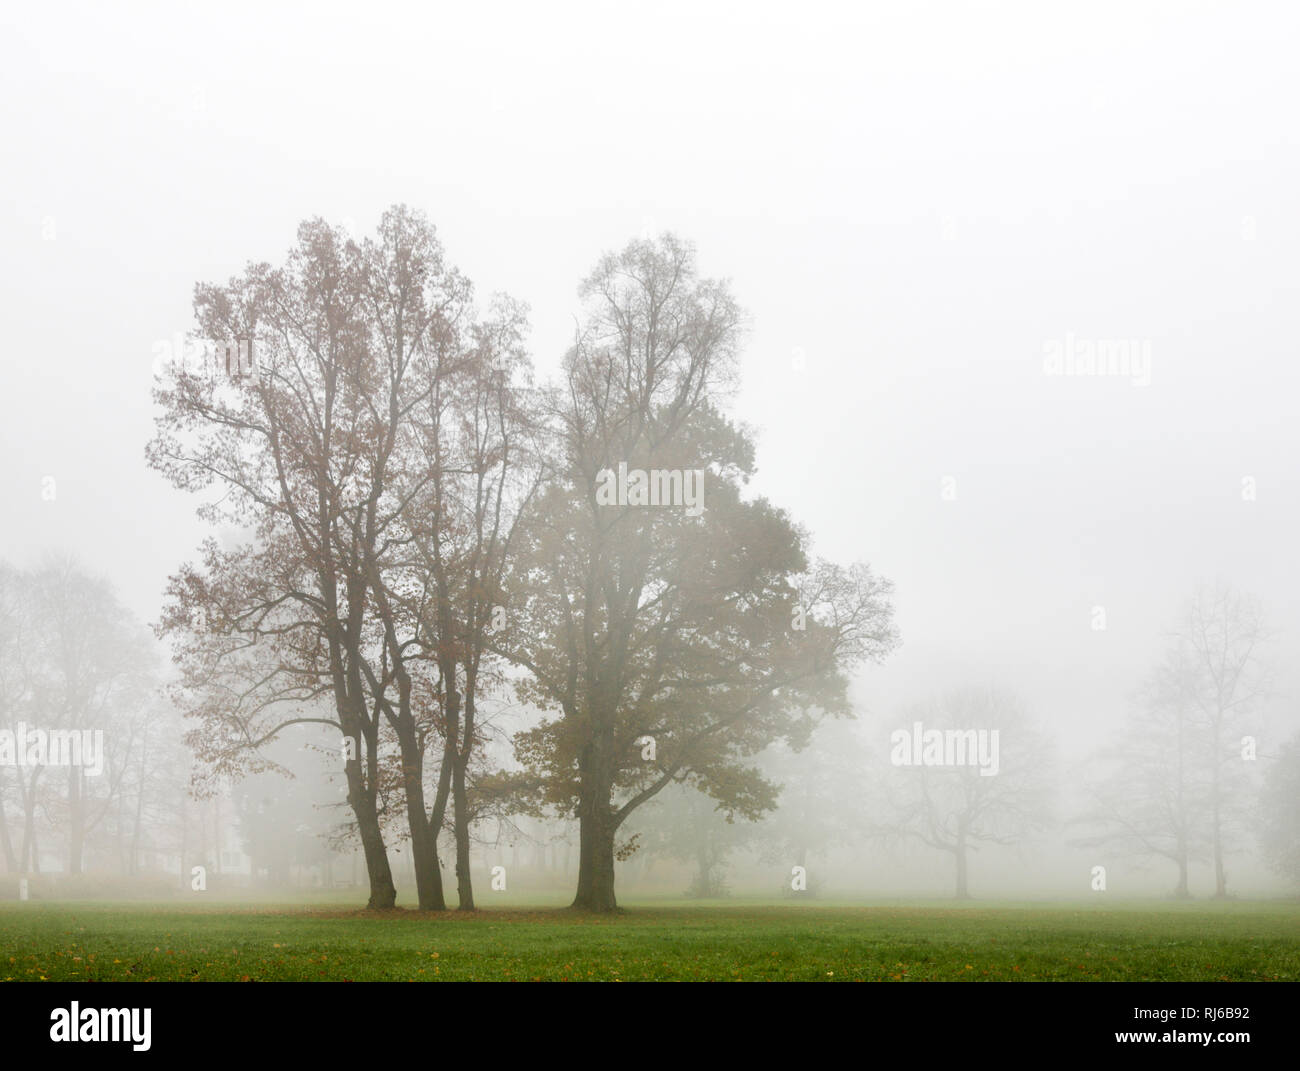 Deutschland, Thüringen, Gehren, Bäume, Herbstlaub, Wiese, Nebel Foto Stock